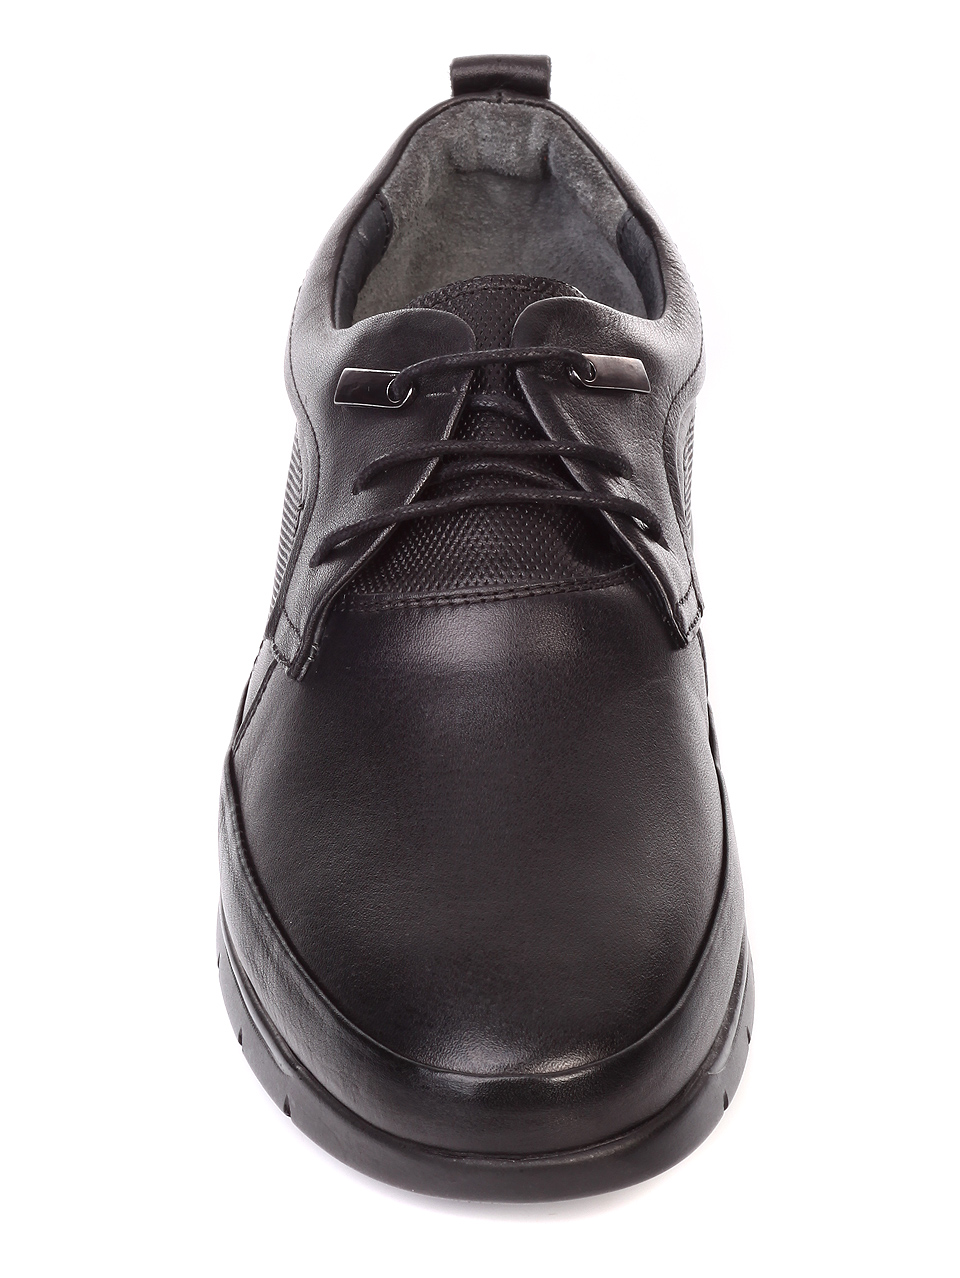 Ежедневни мъжки обувки от естествена кожа 6567 black